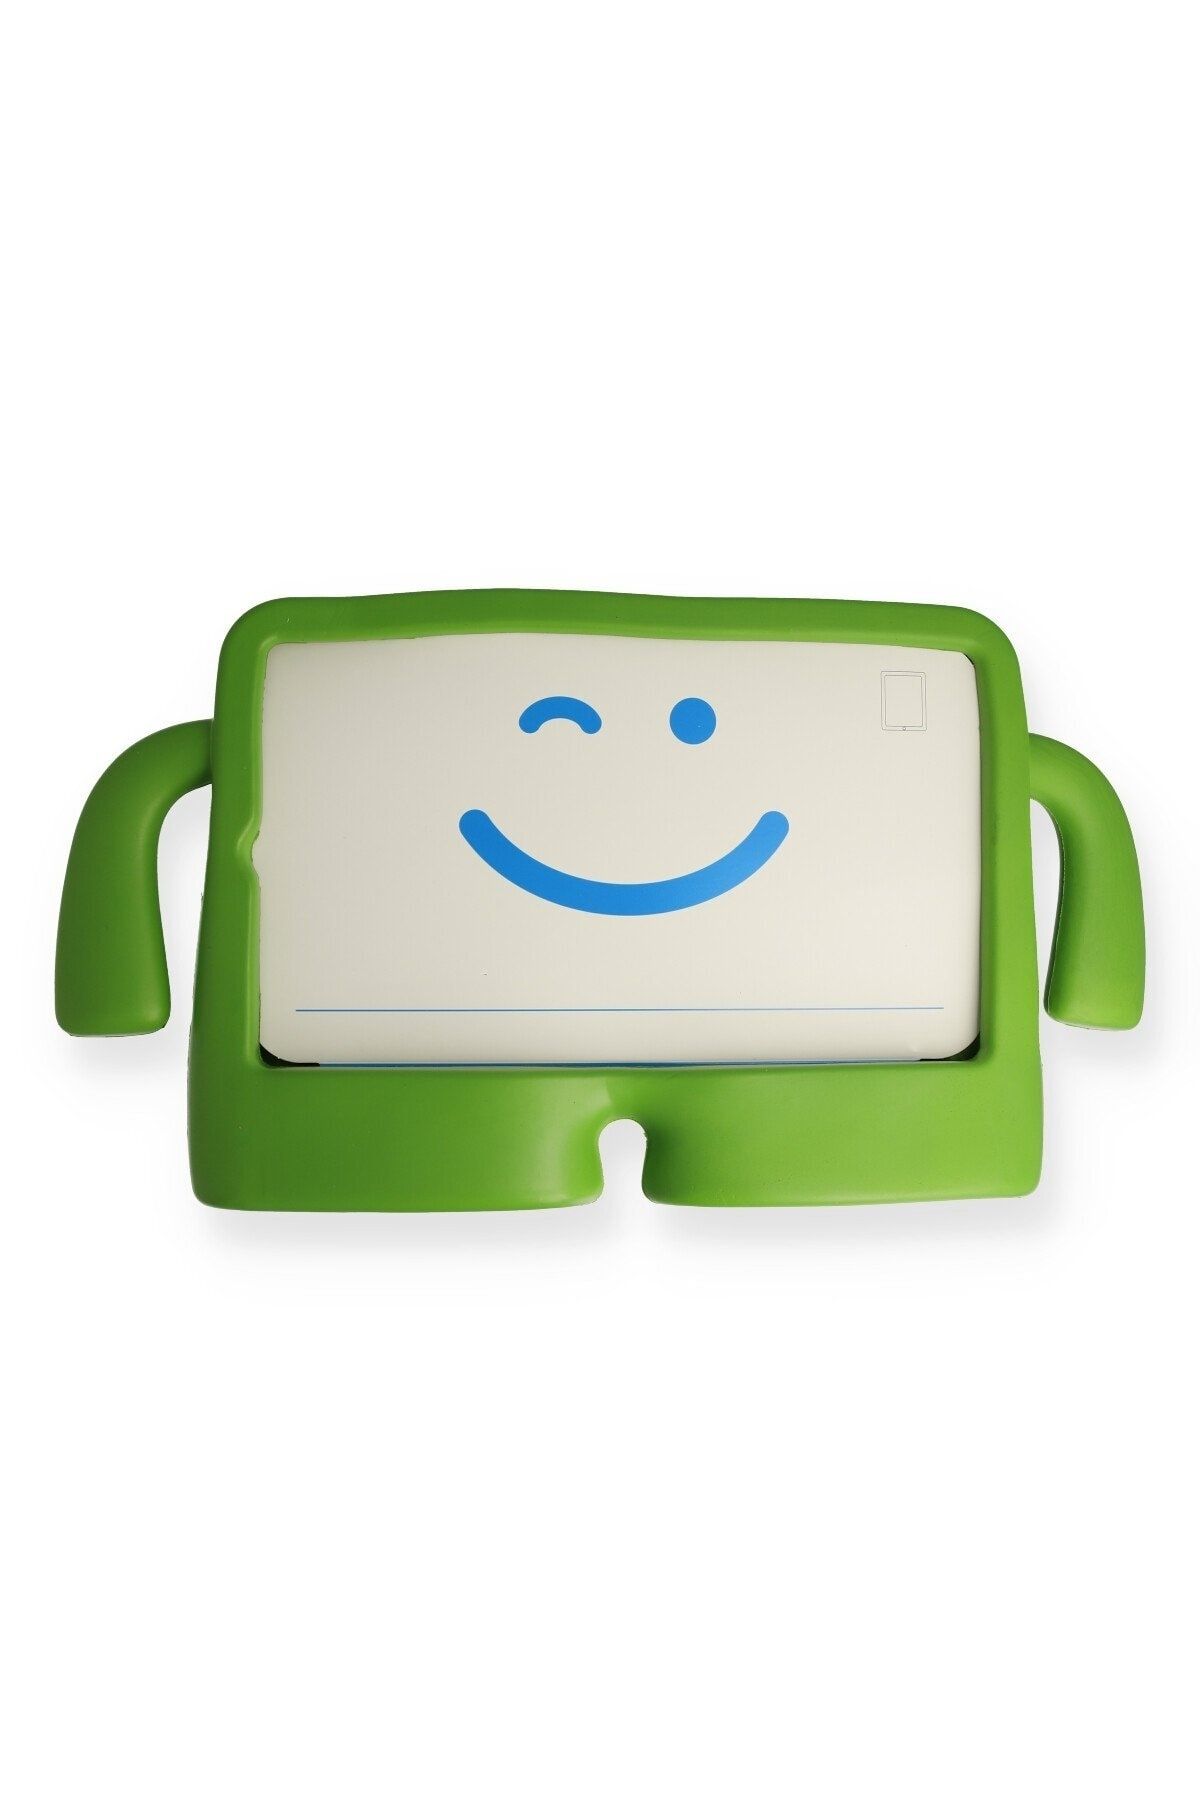 Bilişim Aksesuar Ipad Mini 1 Kılıf Karakter Tablet Silikon - Yeşil